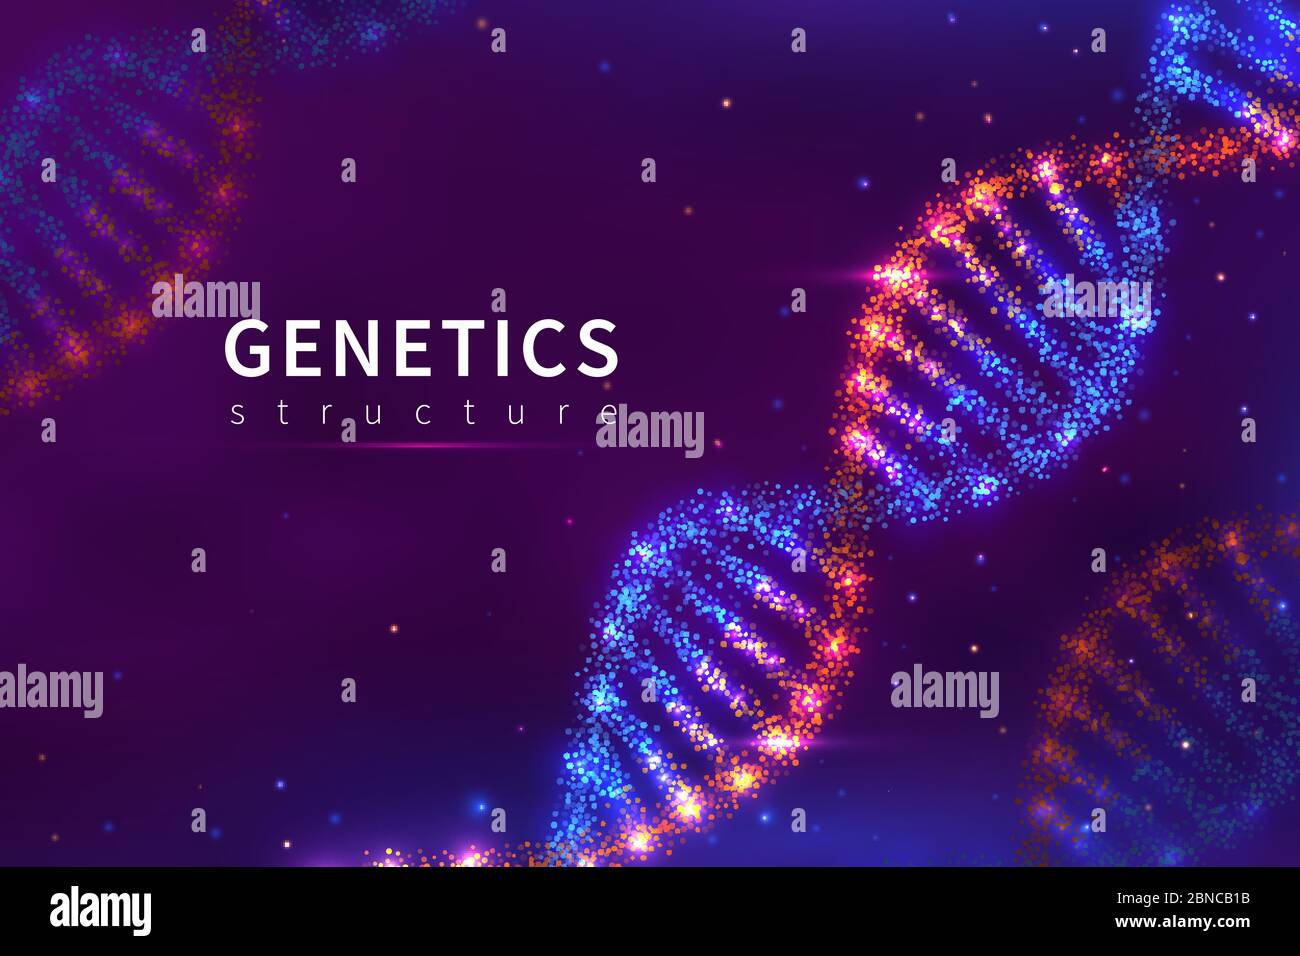 DNA-Hintergrund. Genetik Struktur, Biologie Technologie. 3d-Poster für DNA-Modell-Vektor des menschlichen Genoms. Illustration der Struktur molekulare Helix, genetische dna Stock Vektor